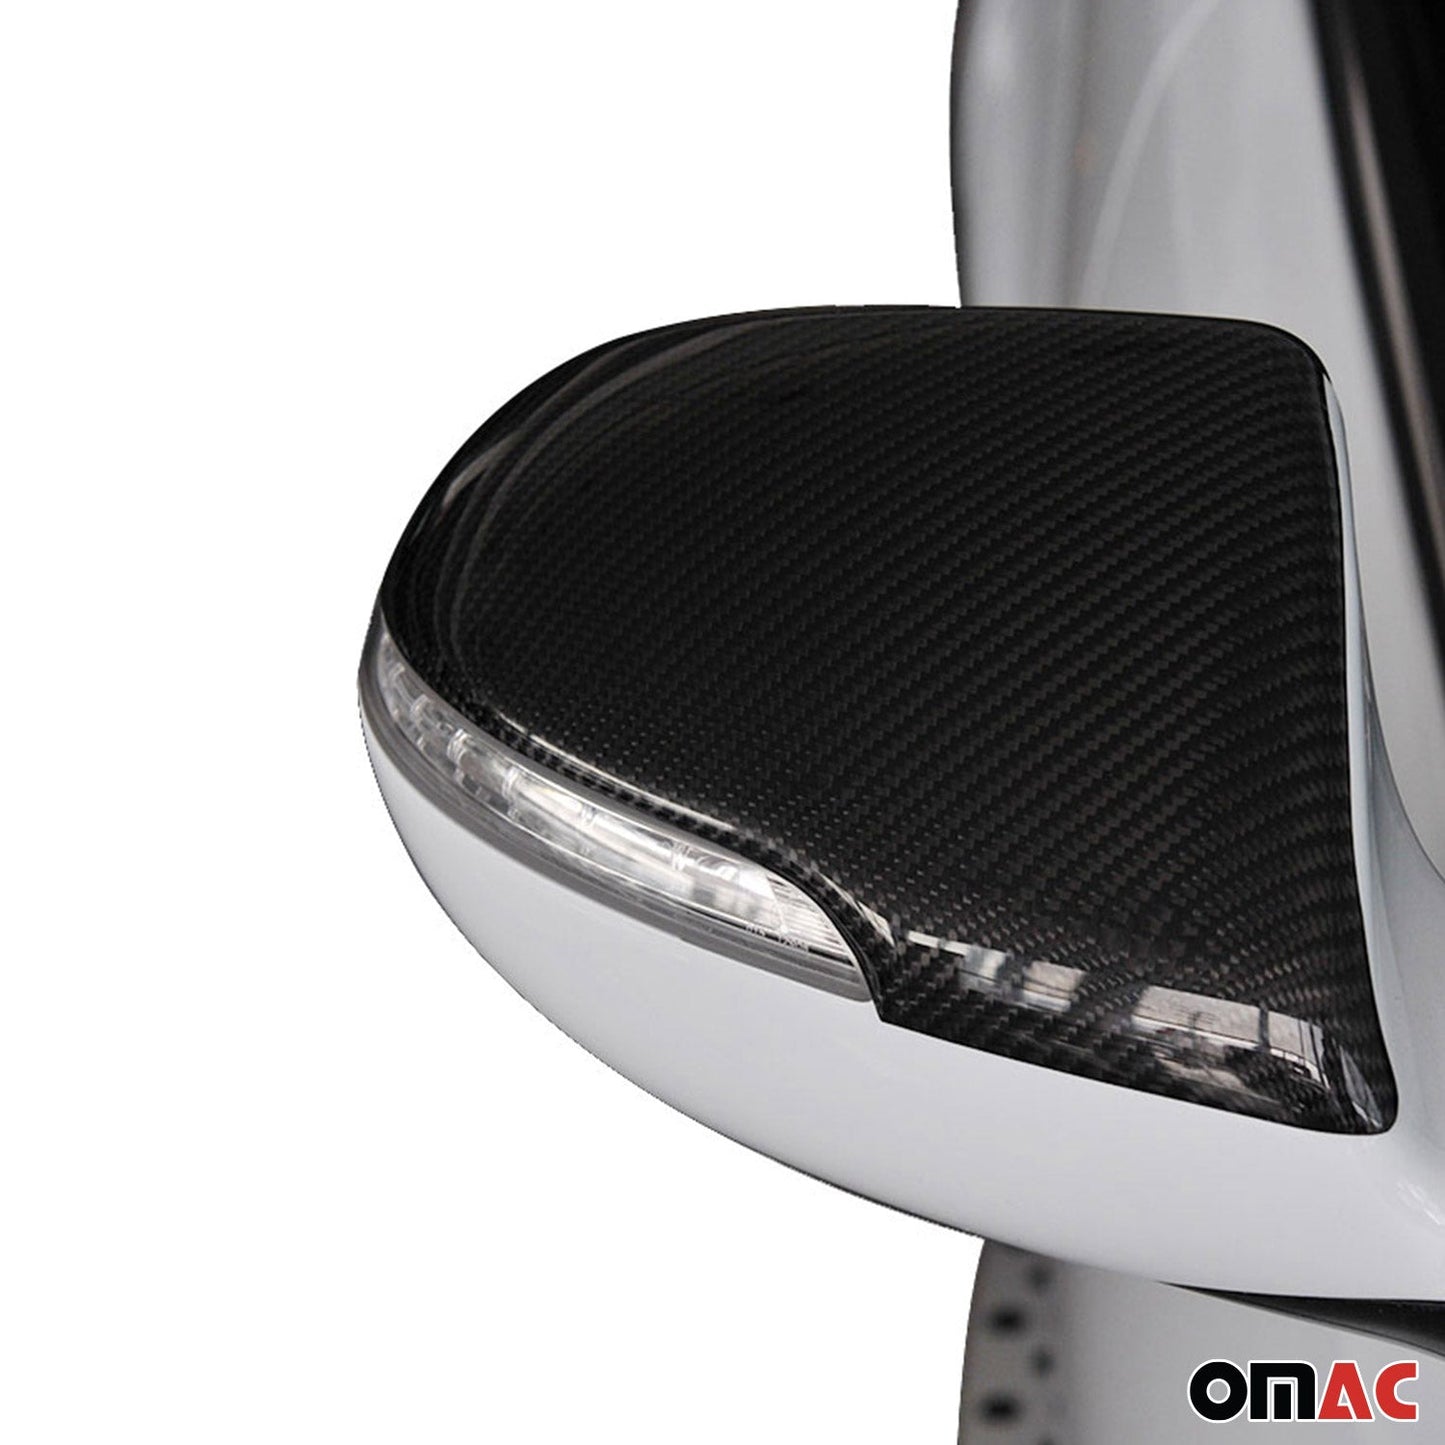 OMAC Side Mirror Cover Caps Fits Kia Sportage 2011-2014 Carbon Fiber Black 2 Pcs 4016111C